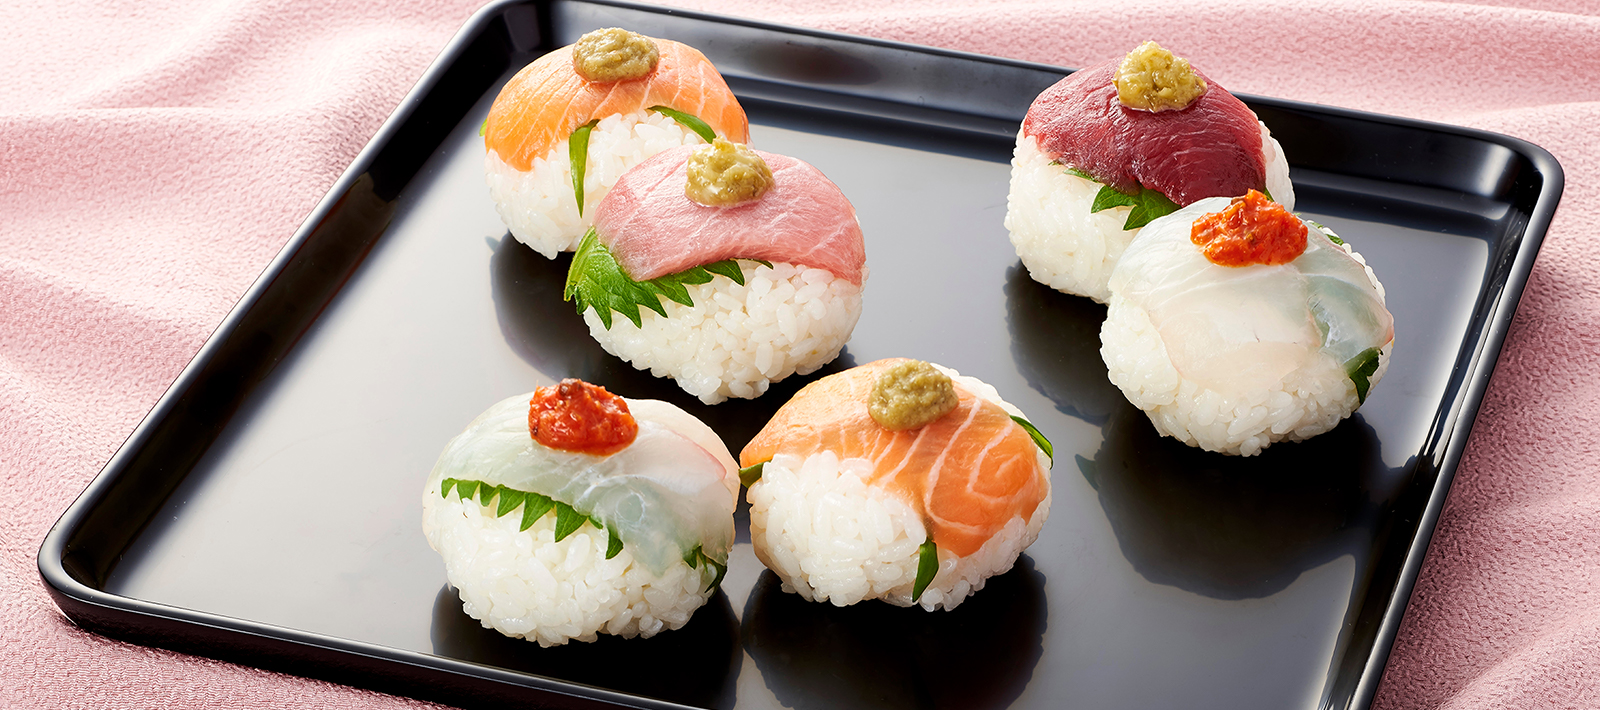 圆形寿司 食谱 爱思必食品全球网站